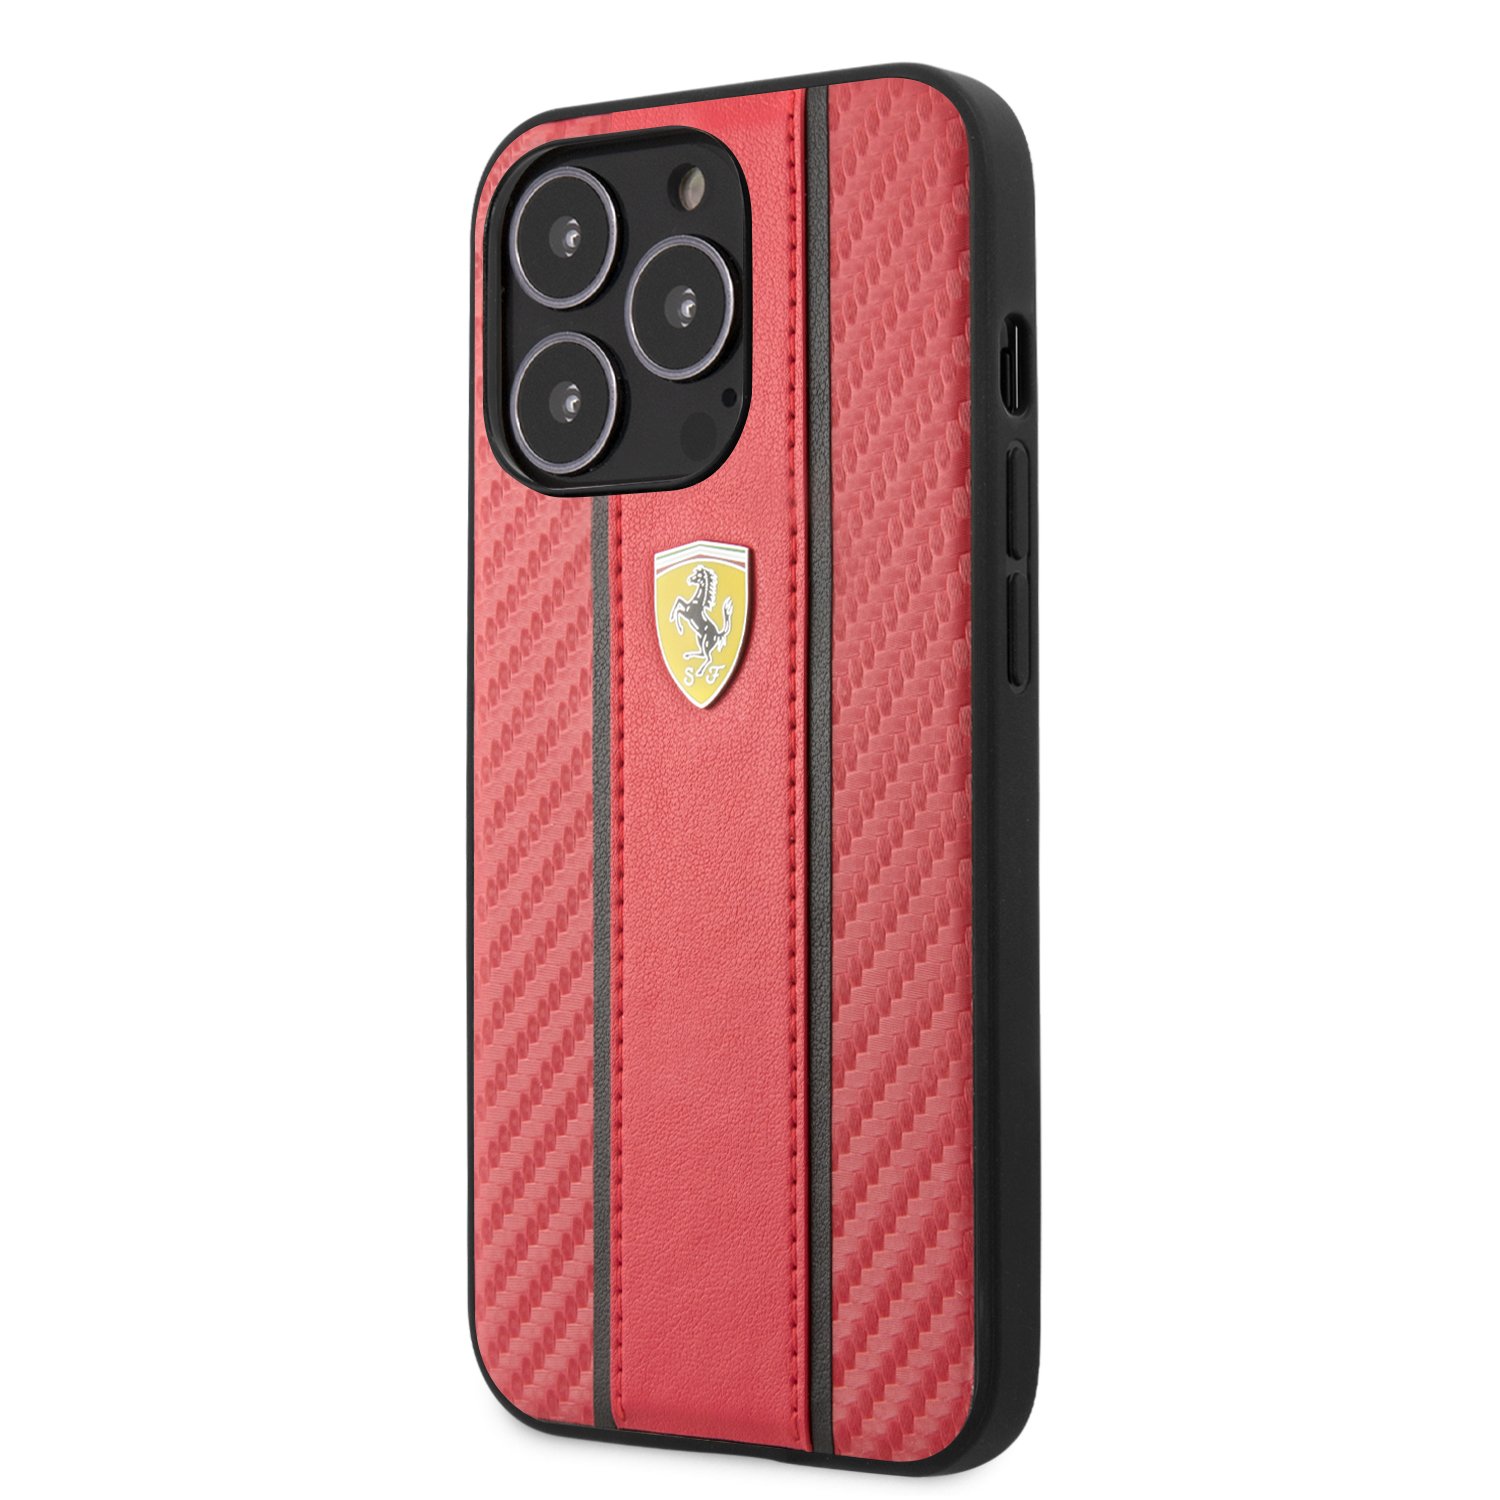 Mica Cristal Templado para iPhone X Ferrari